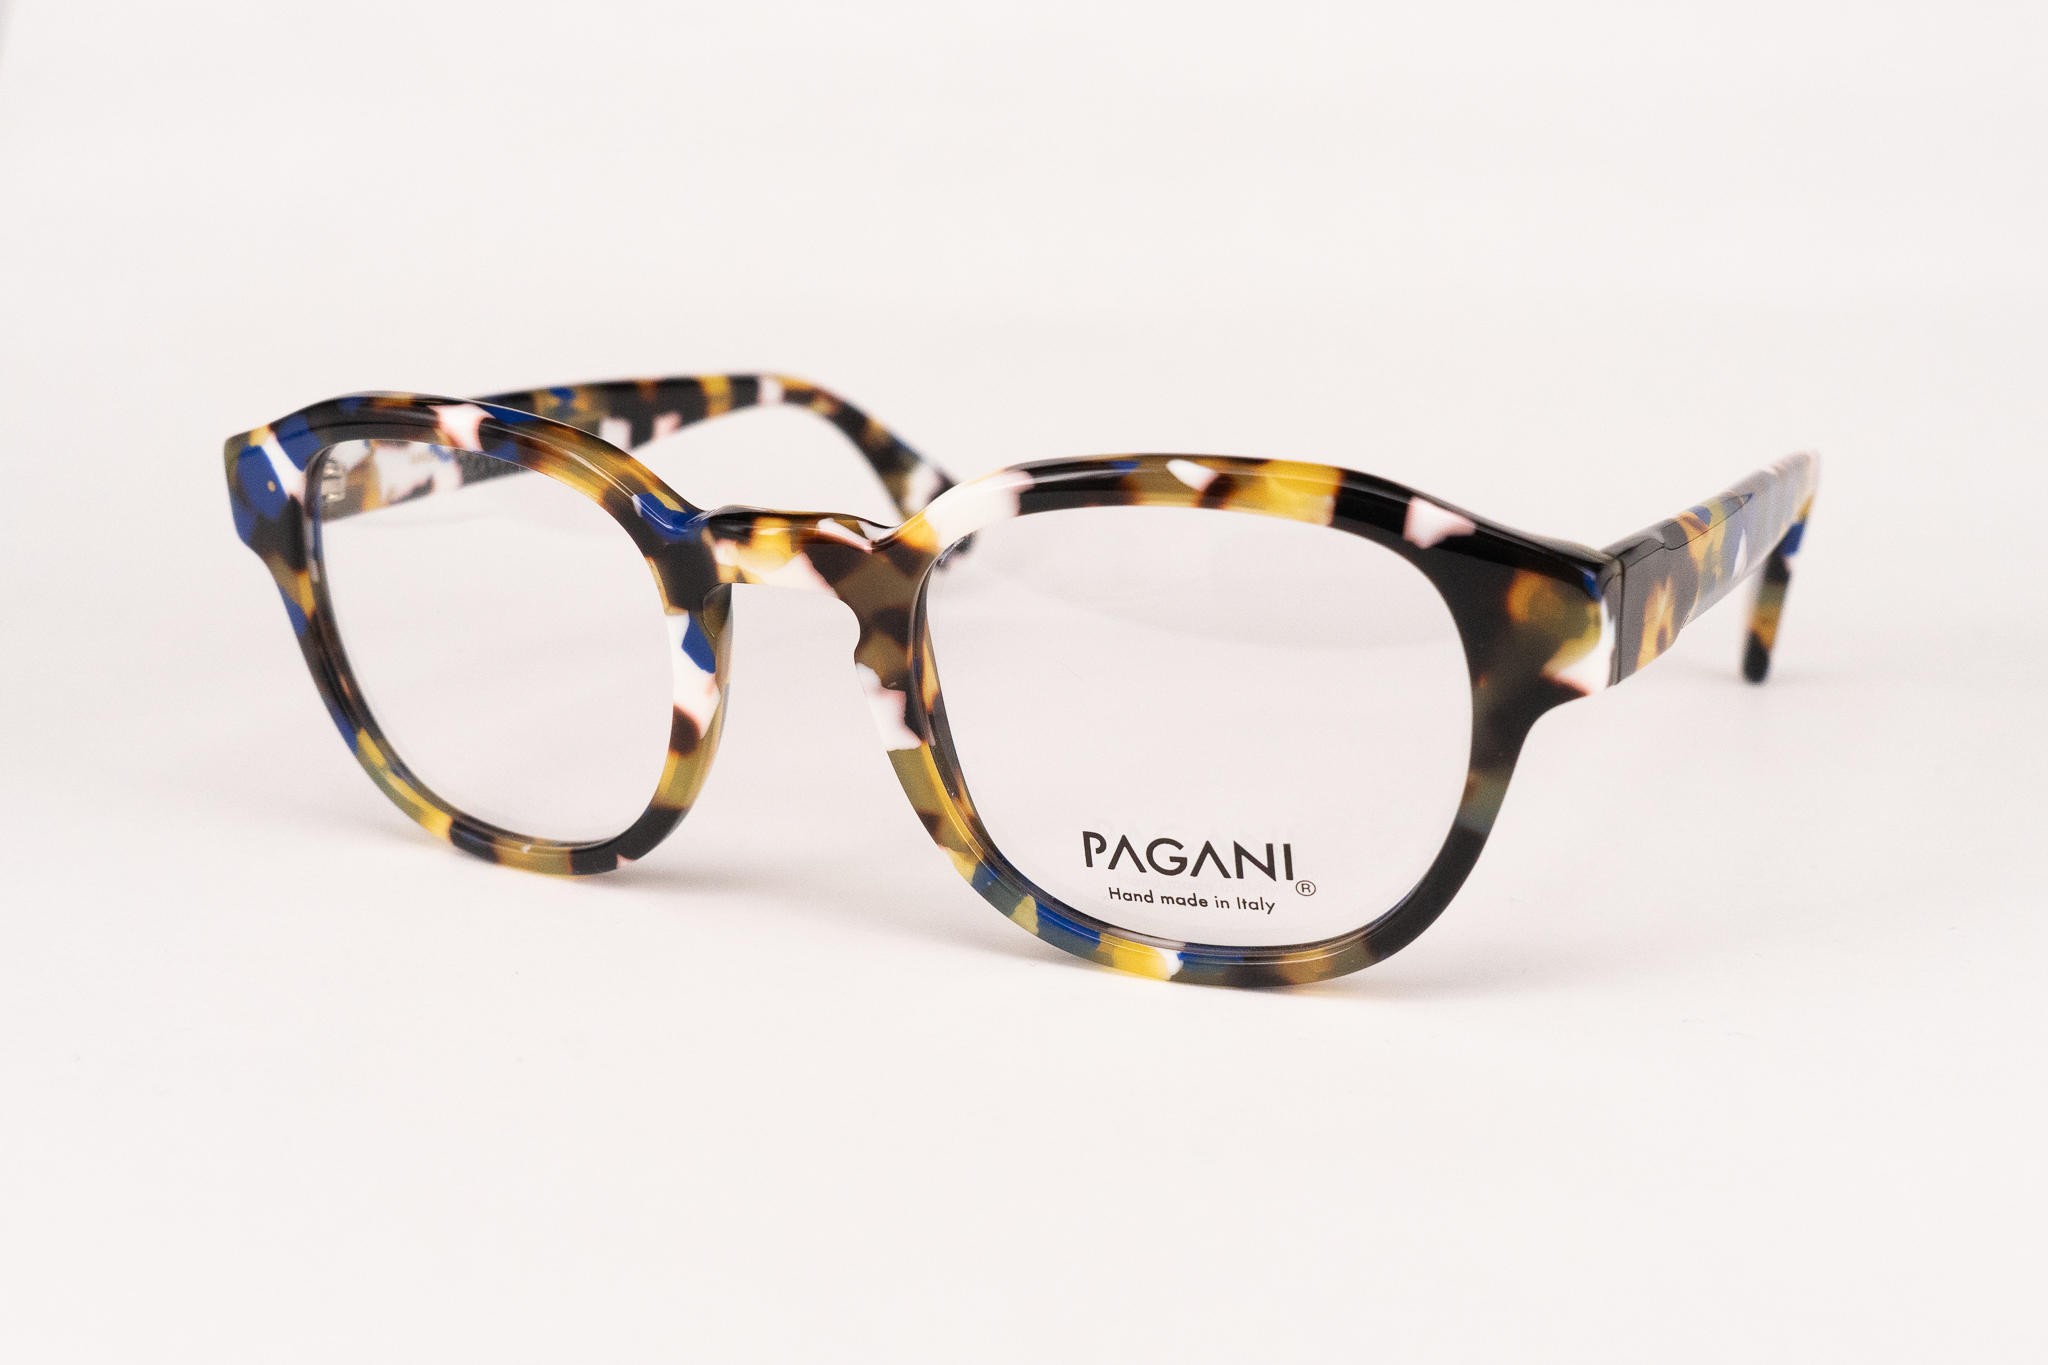 Pagani, Marke, Brille, Brillenfassung